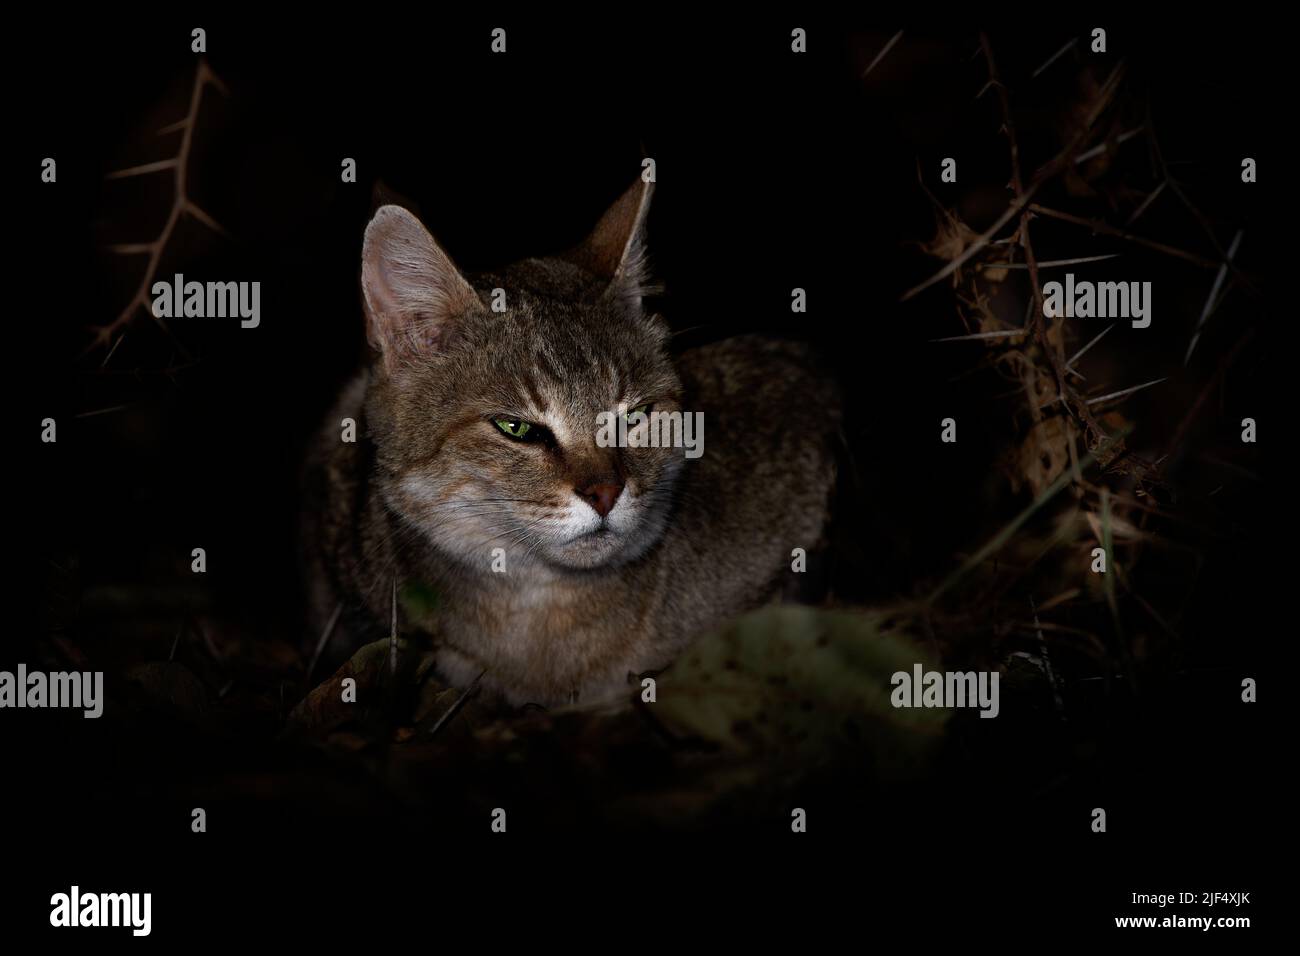 Afrikanische Wildkatze - Felis lybica kleine Katze aus Afrika, West- und Zentralasien in der Nacht, Felis silvestris, eine Vielzahl von Lebensräumen, vor allem Stockfoto